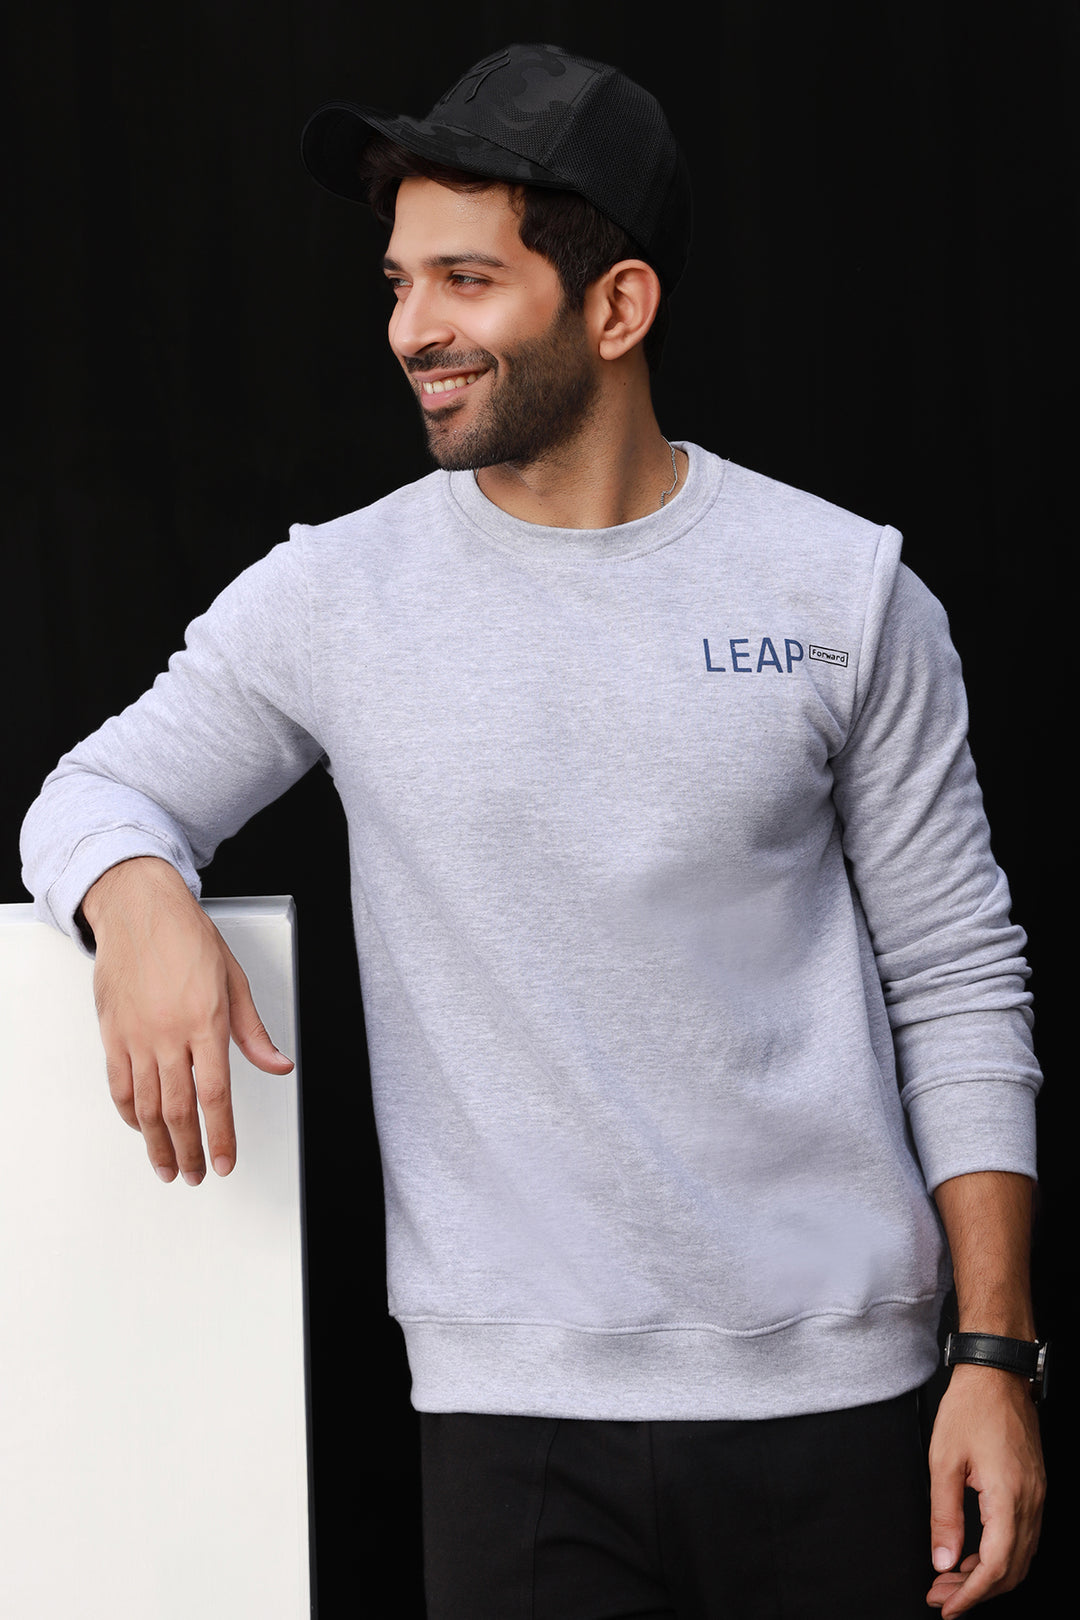 Men's Sweatshirts Online in Pakistan